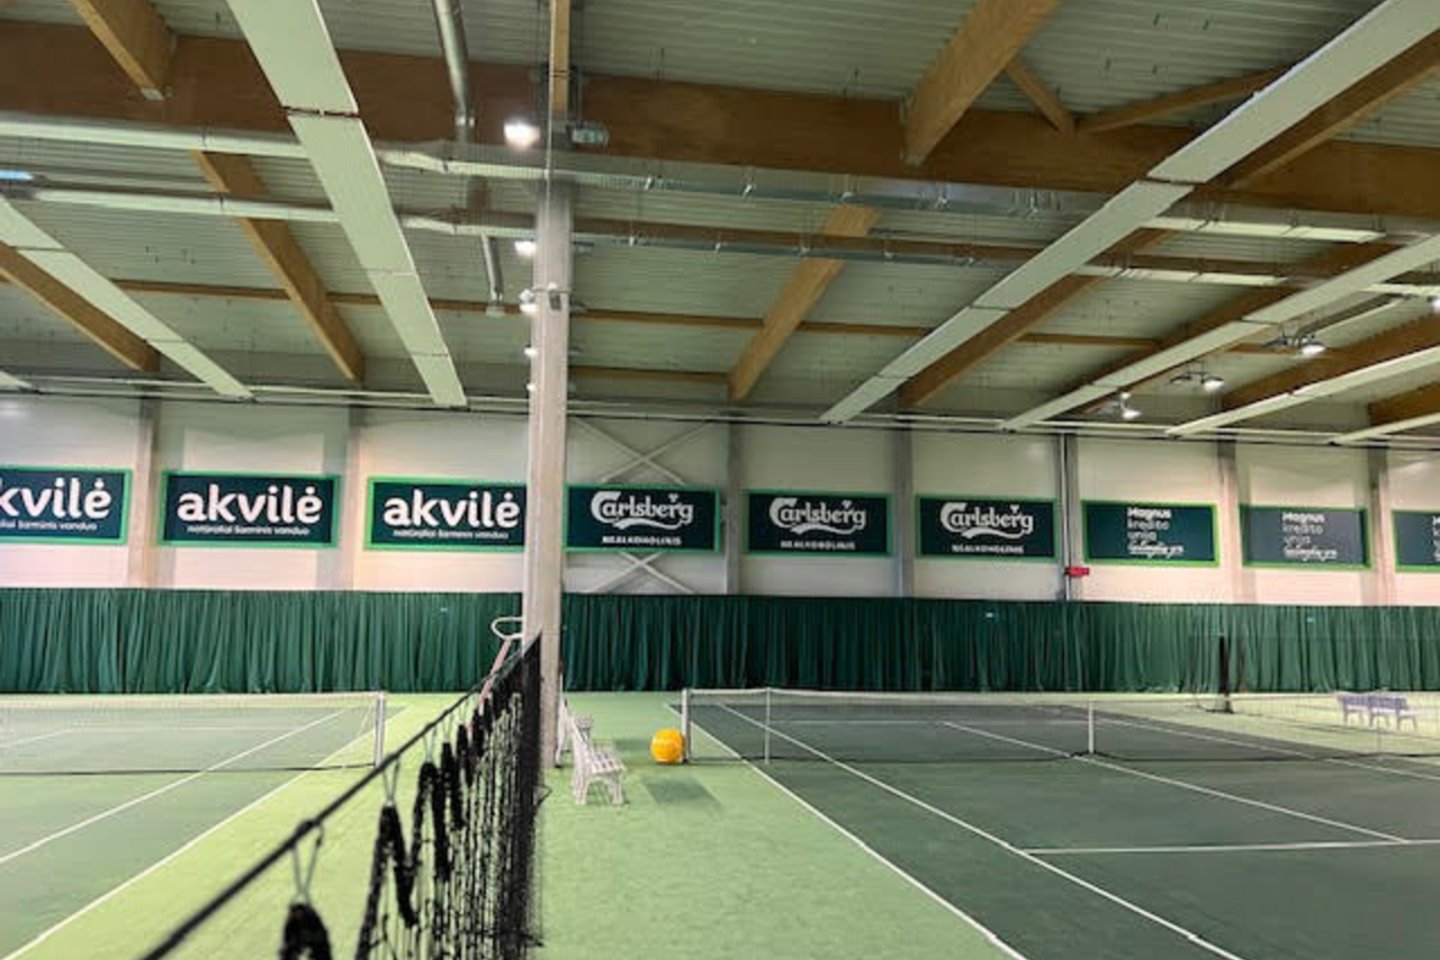  Balžeko teniso akademijos sezono starte – 500 auklėtinių, gerėjanti infrastruktūra, nauji projektai<br> balzekastennis.lt nuotr.